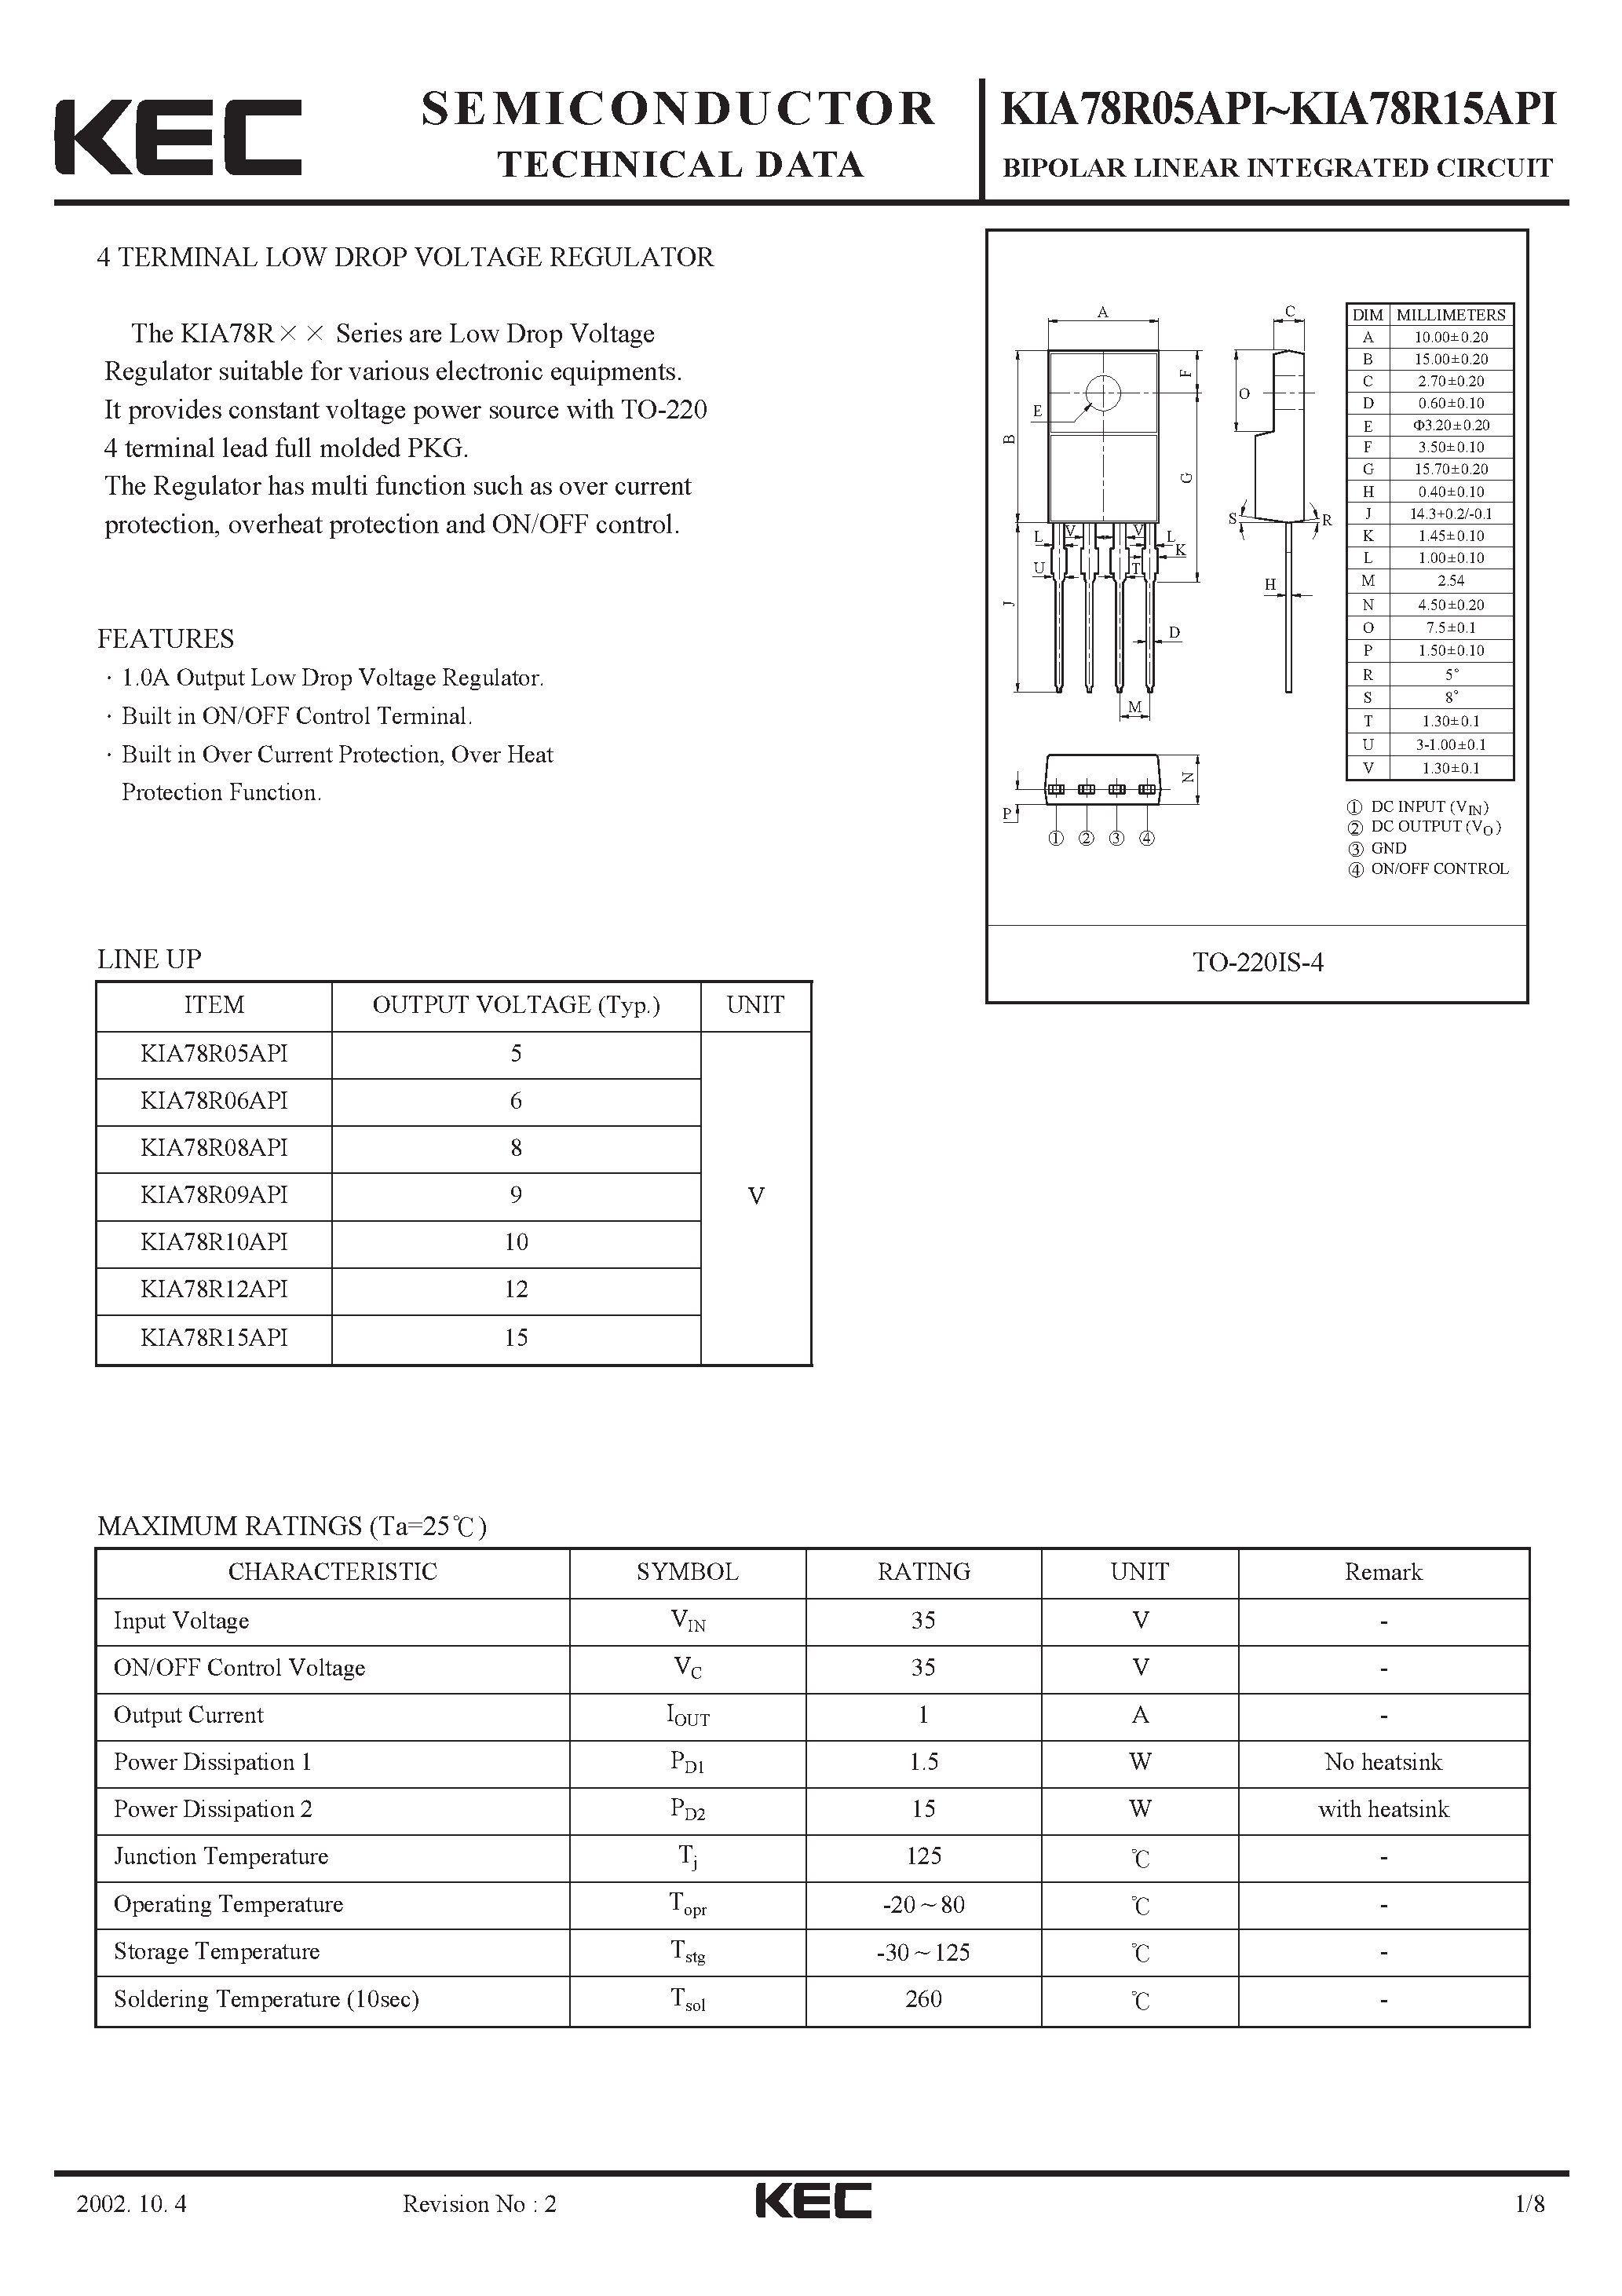 Datasheet KIA78R15API - BIPOLAR LINEAR INTEGRATED CIRCUIT (4 TERMINAL LOW DROP VOLTAGE REGULATOR) page 1